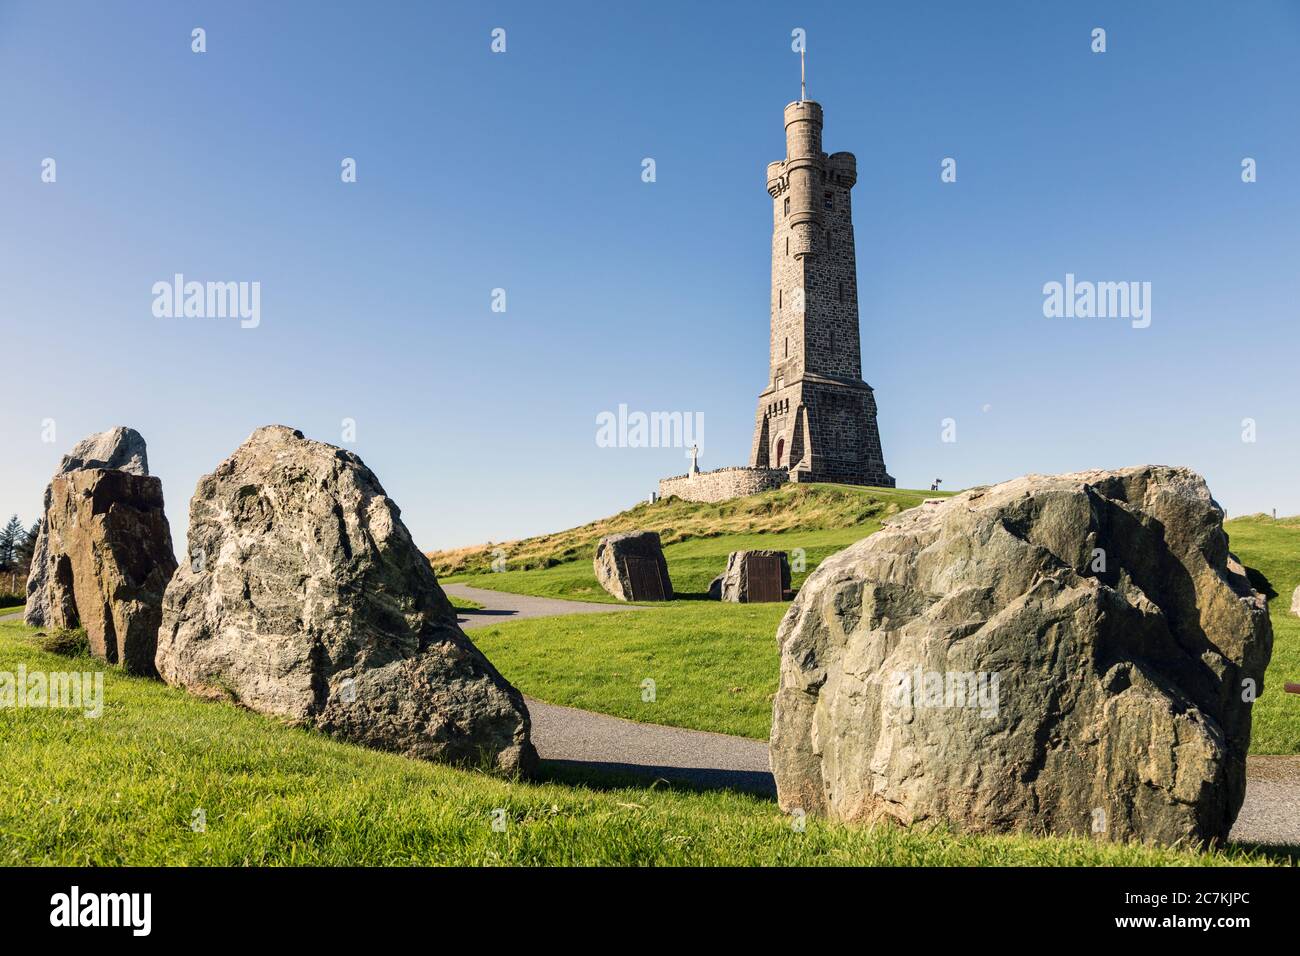 El monumento conmemorativo de la guerra de Lewis, Stornoway, Isla de Lewis, Hébridas exteriores, Escocia Foto de stock